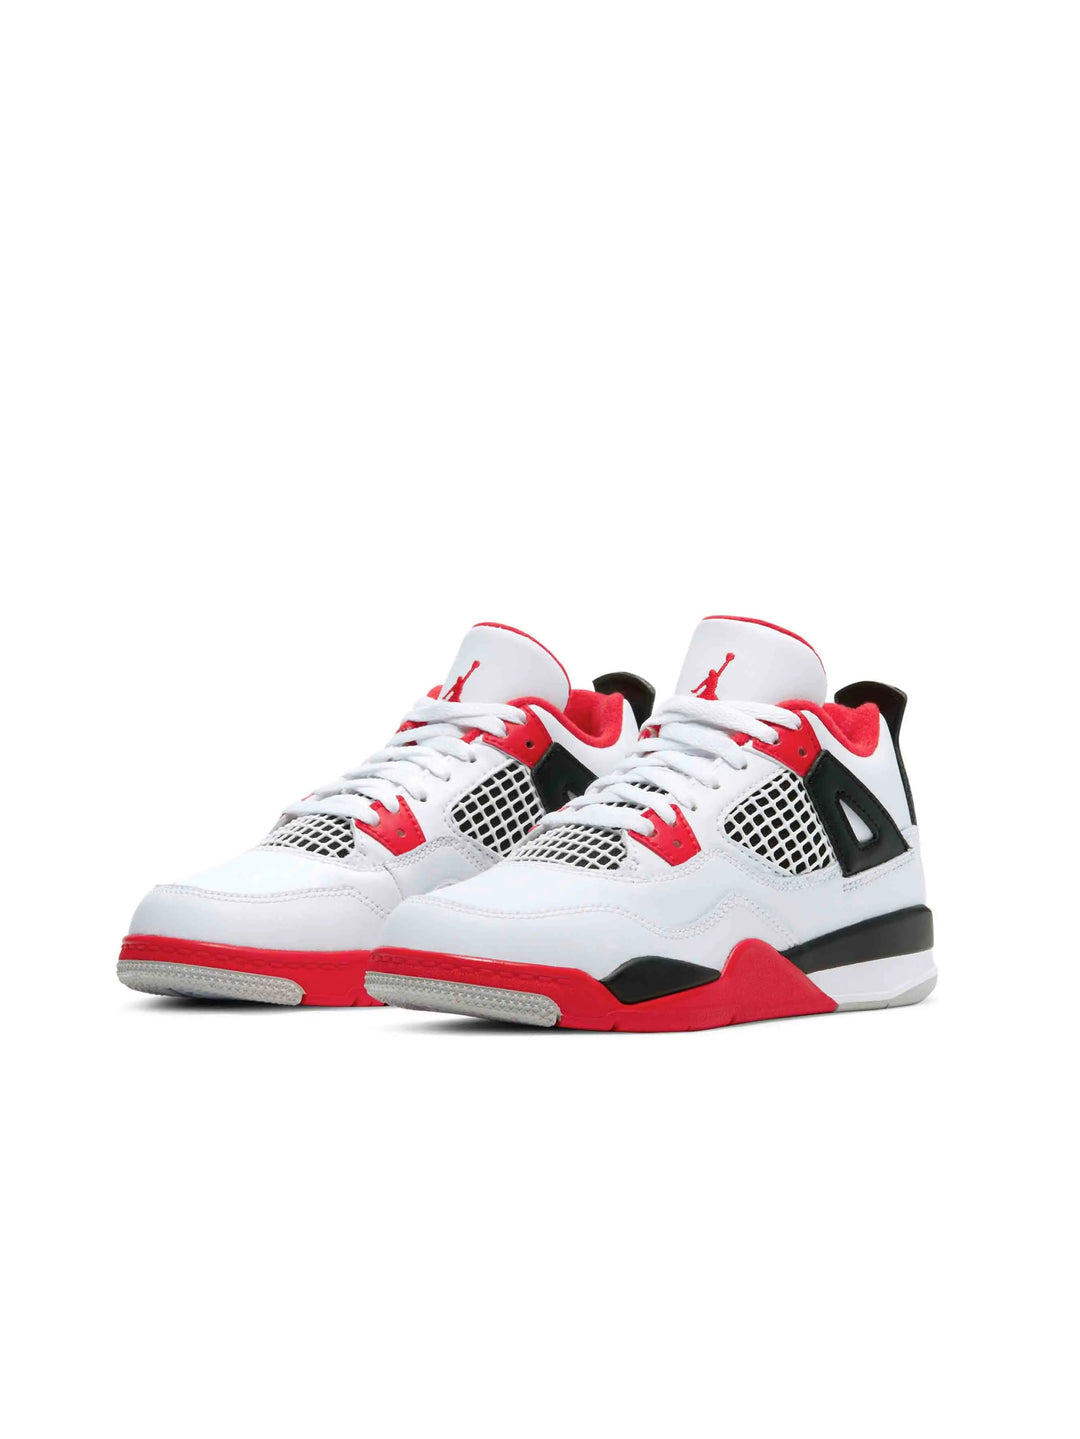 Nike Air Jordan 4 Retro Fire Red (2020) (PS) Prior